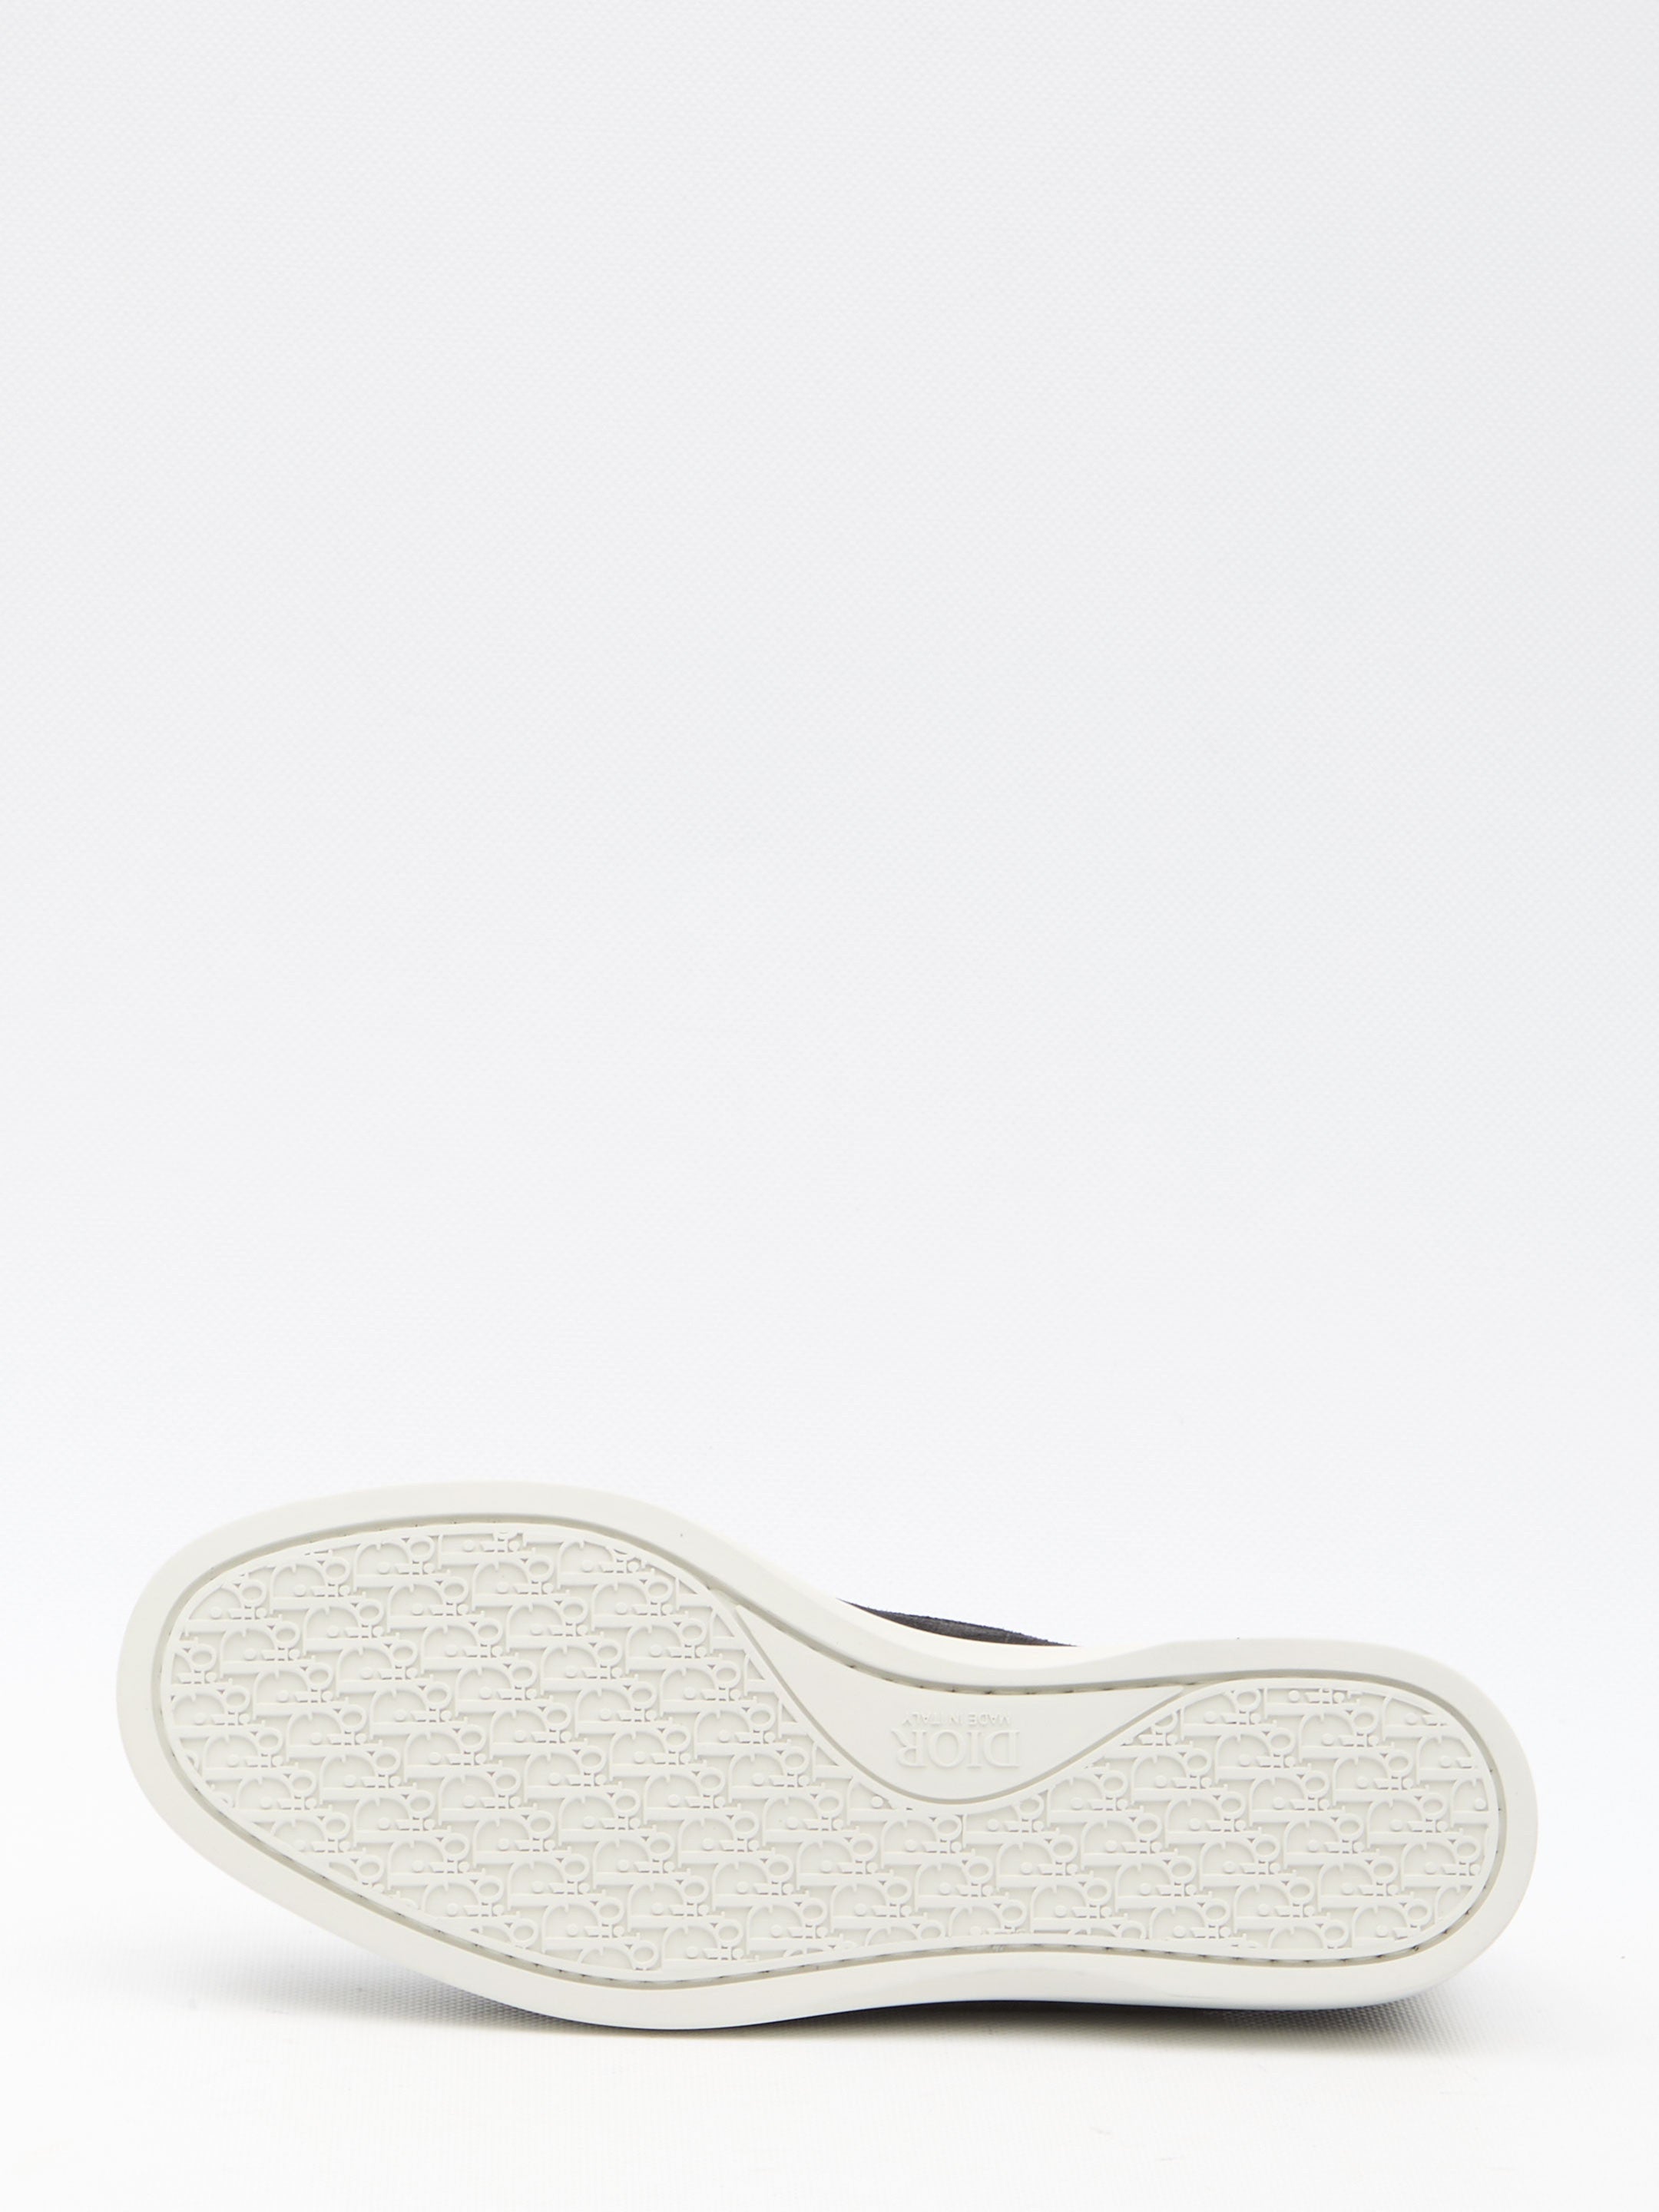 Dior Granville loafers